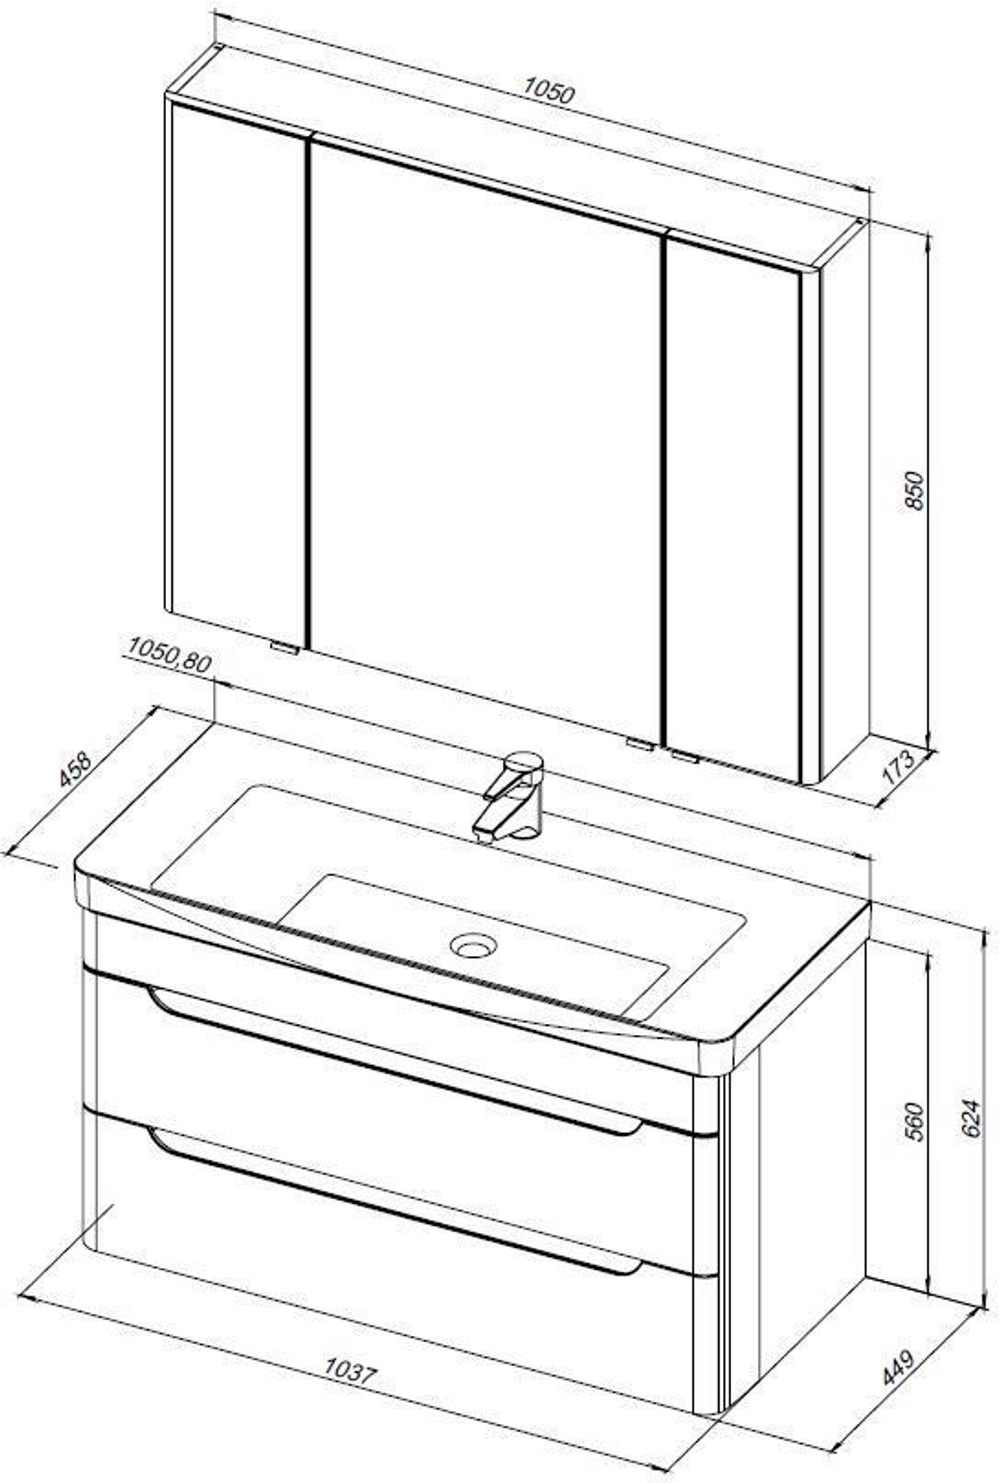 Мебель для ванной Aquanet София 105 белый глянец (2 ящика)